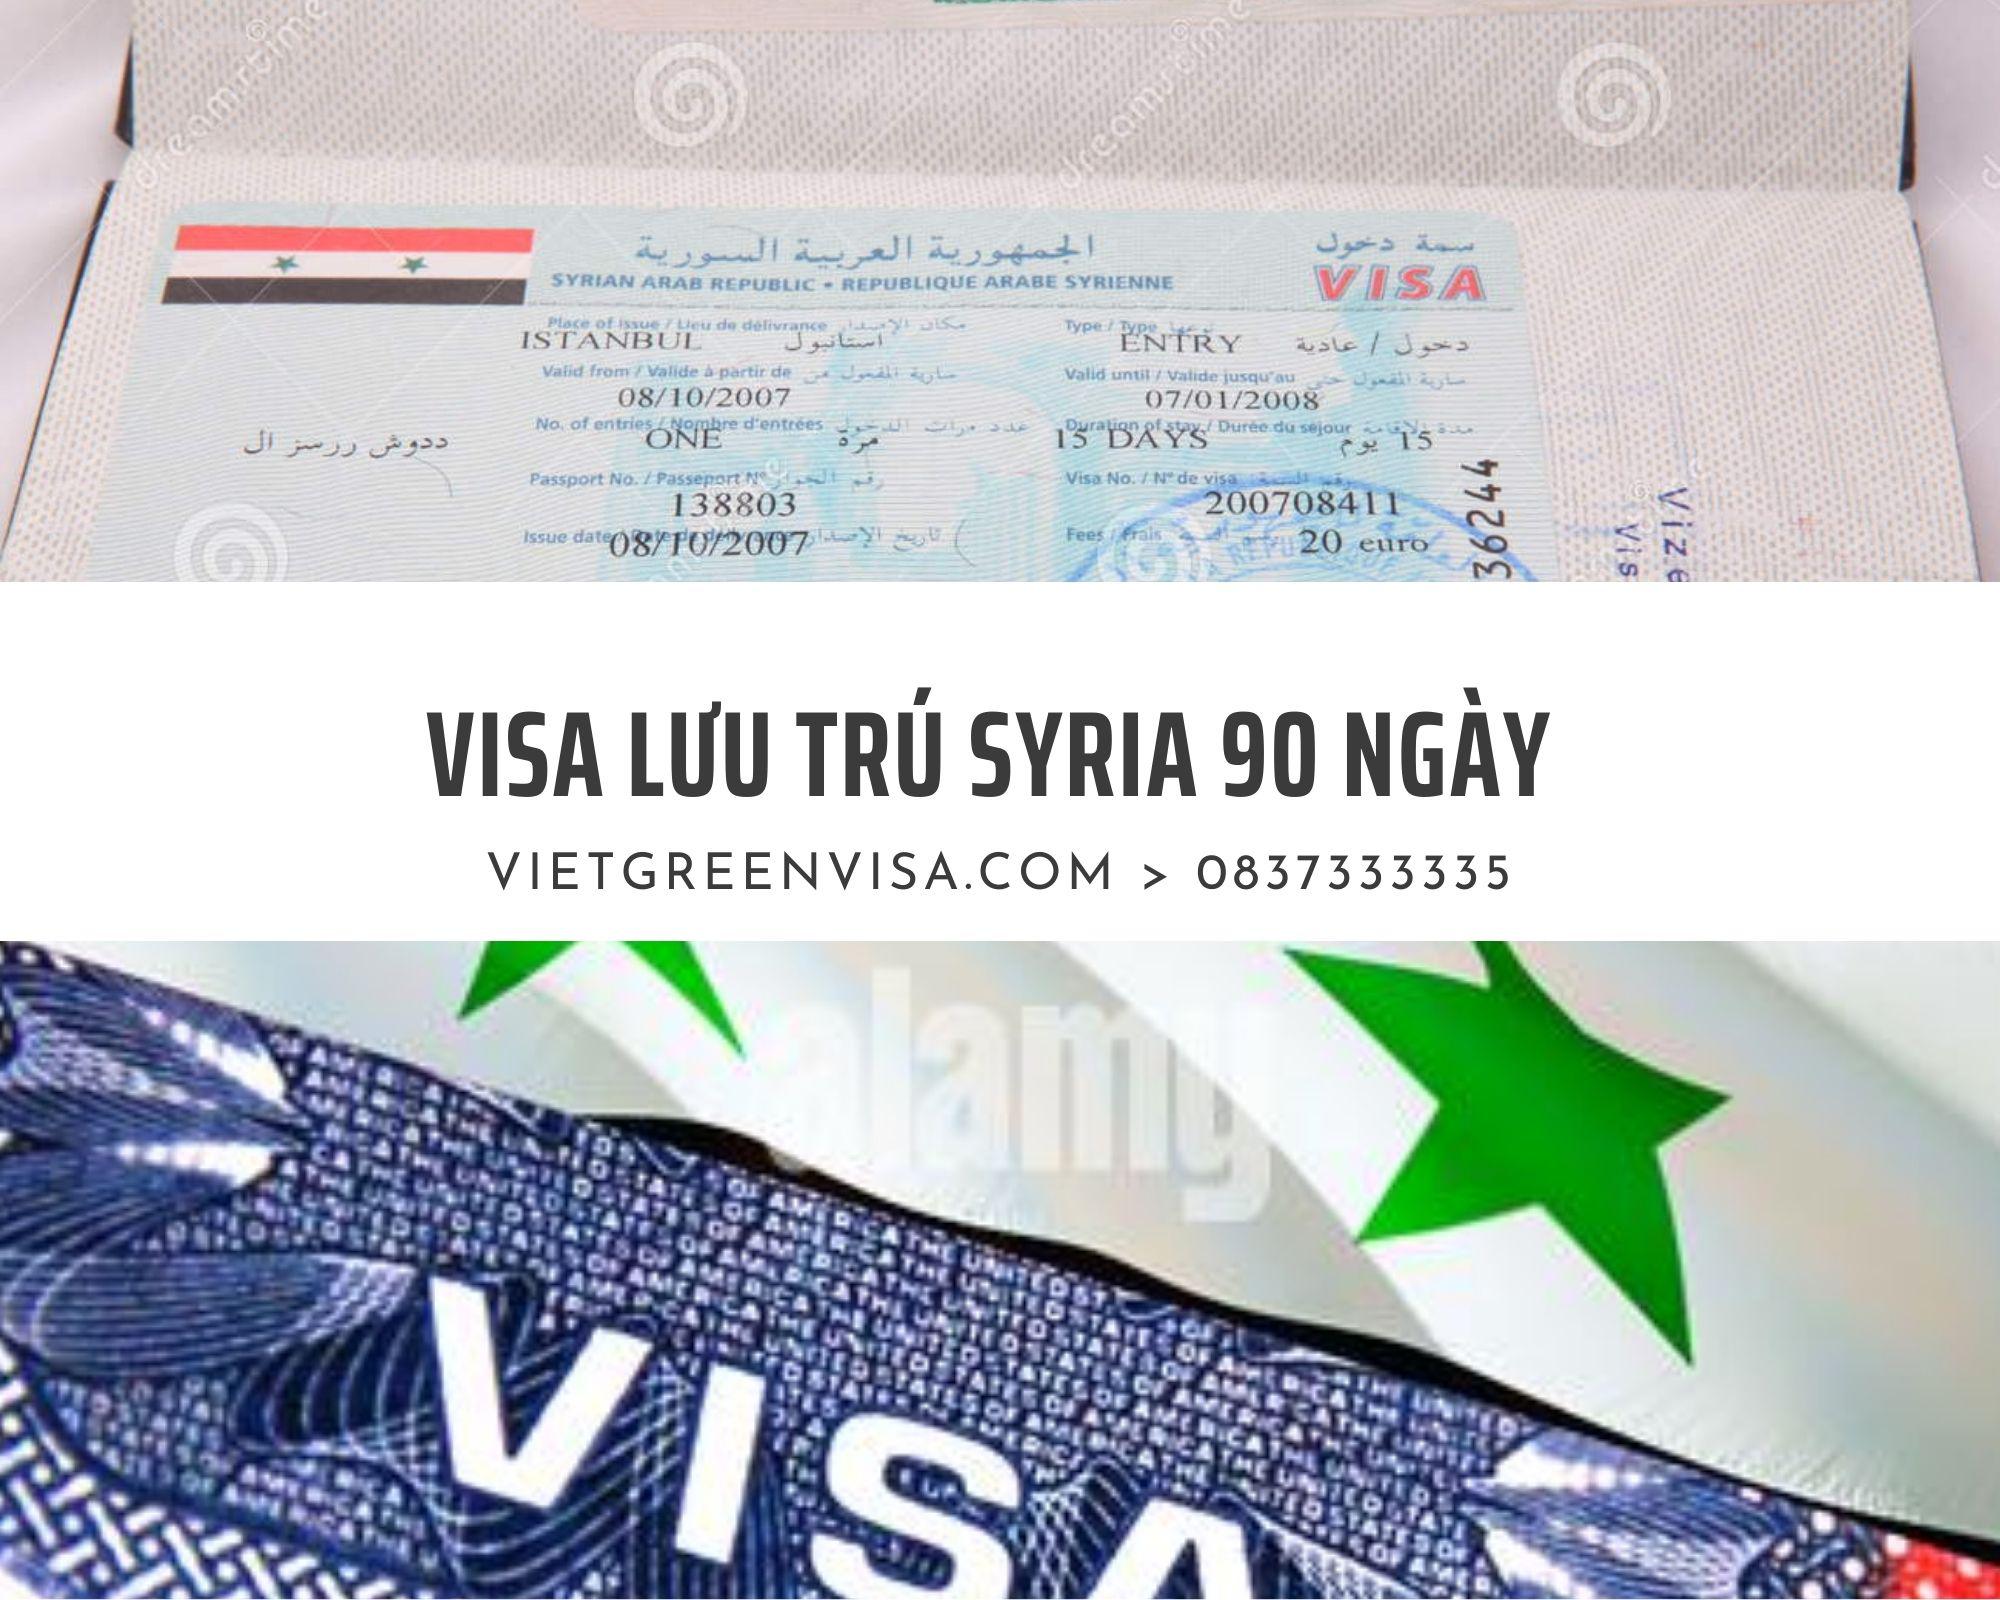 Dịch vụ làm visa Syria du lịch lưu trú 90 ngày giá rẻ